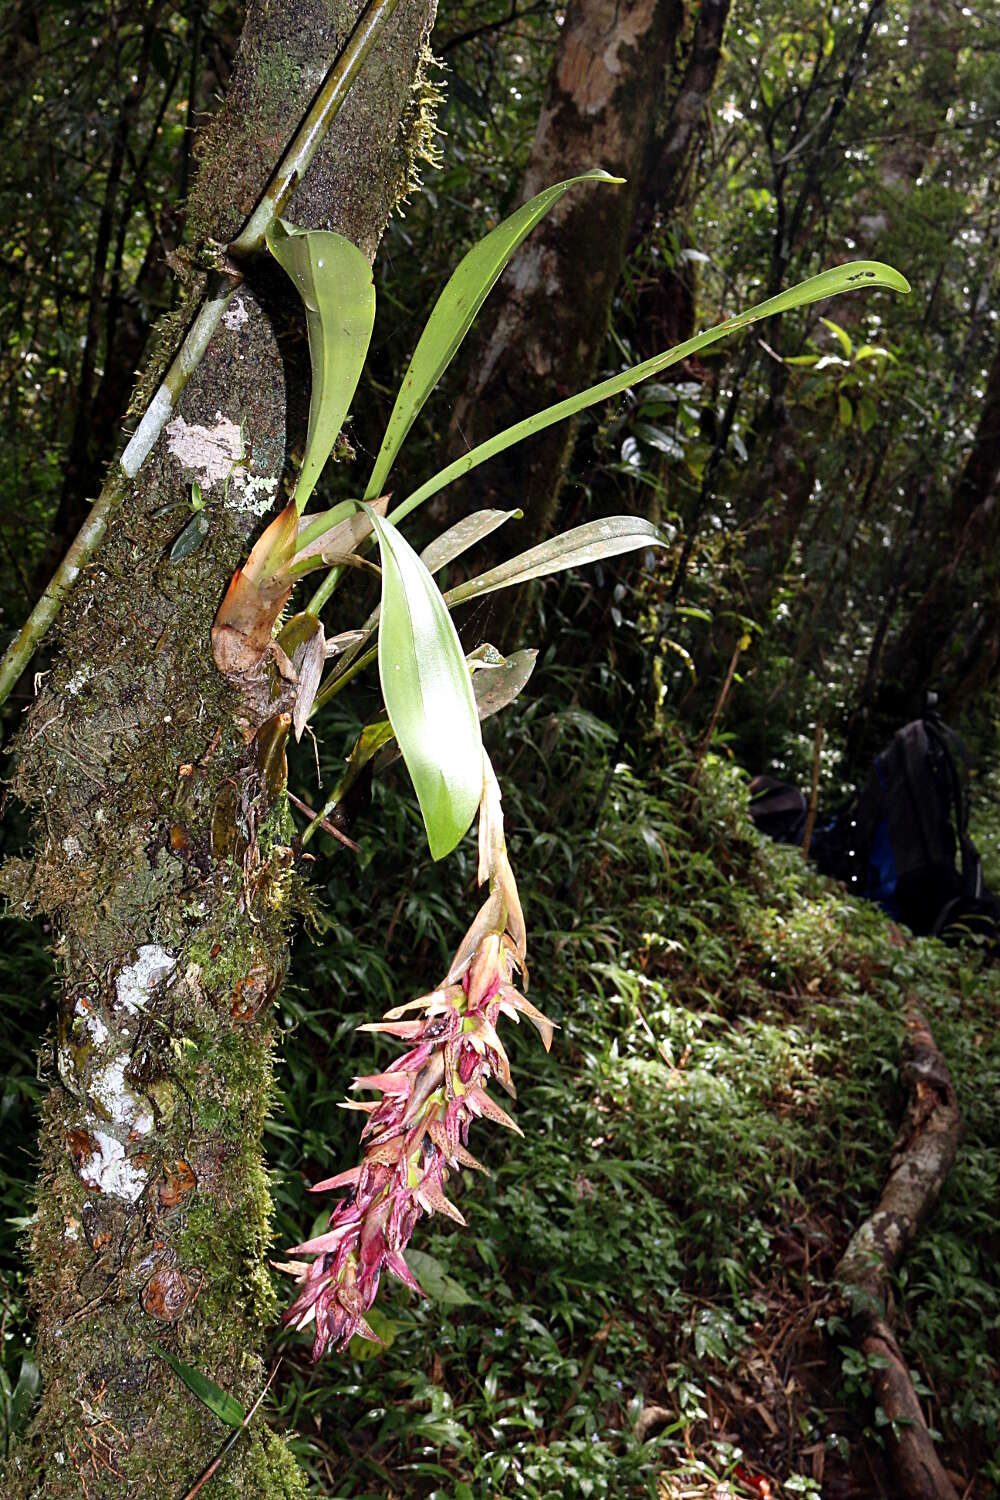 Image of Bulbophyllum occlusum Ridl.